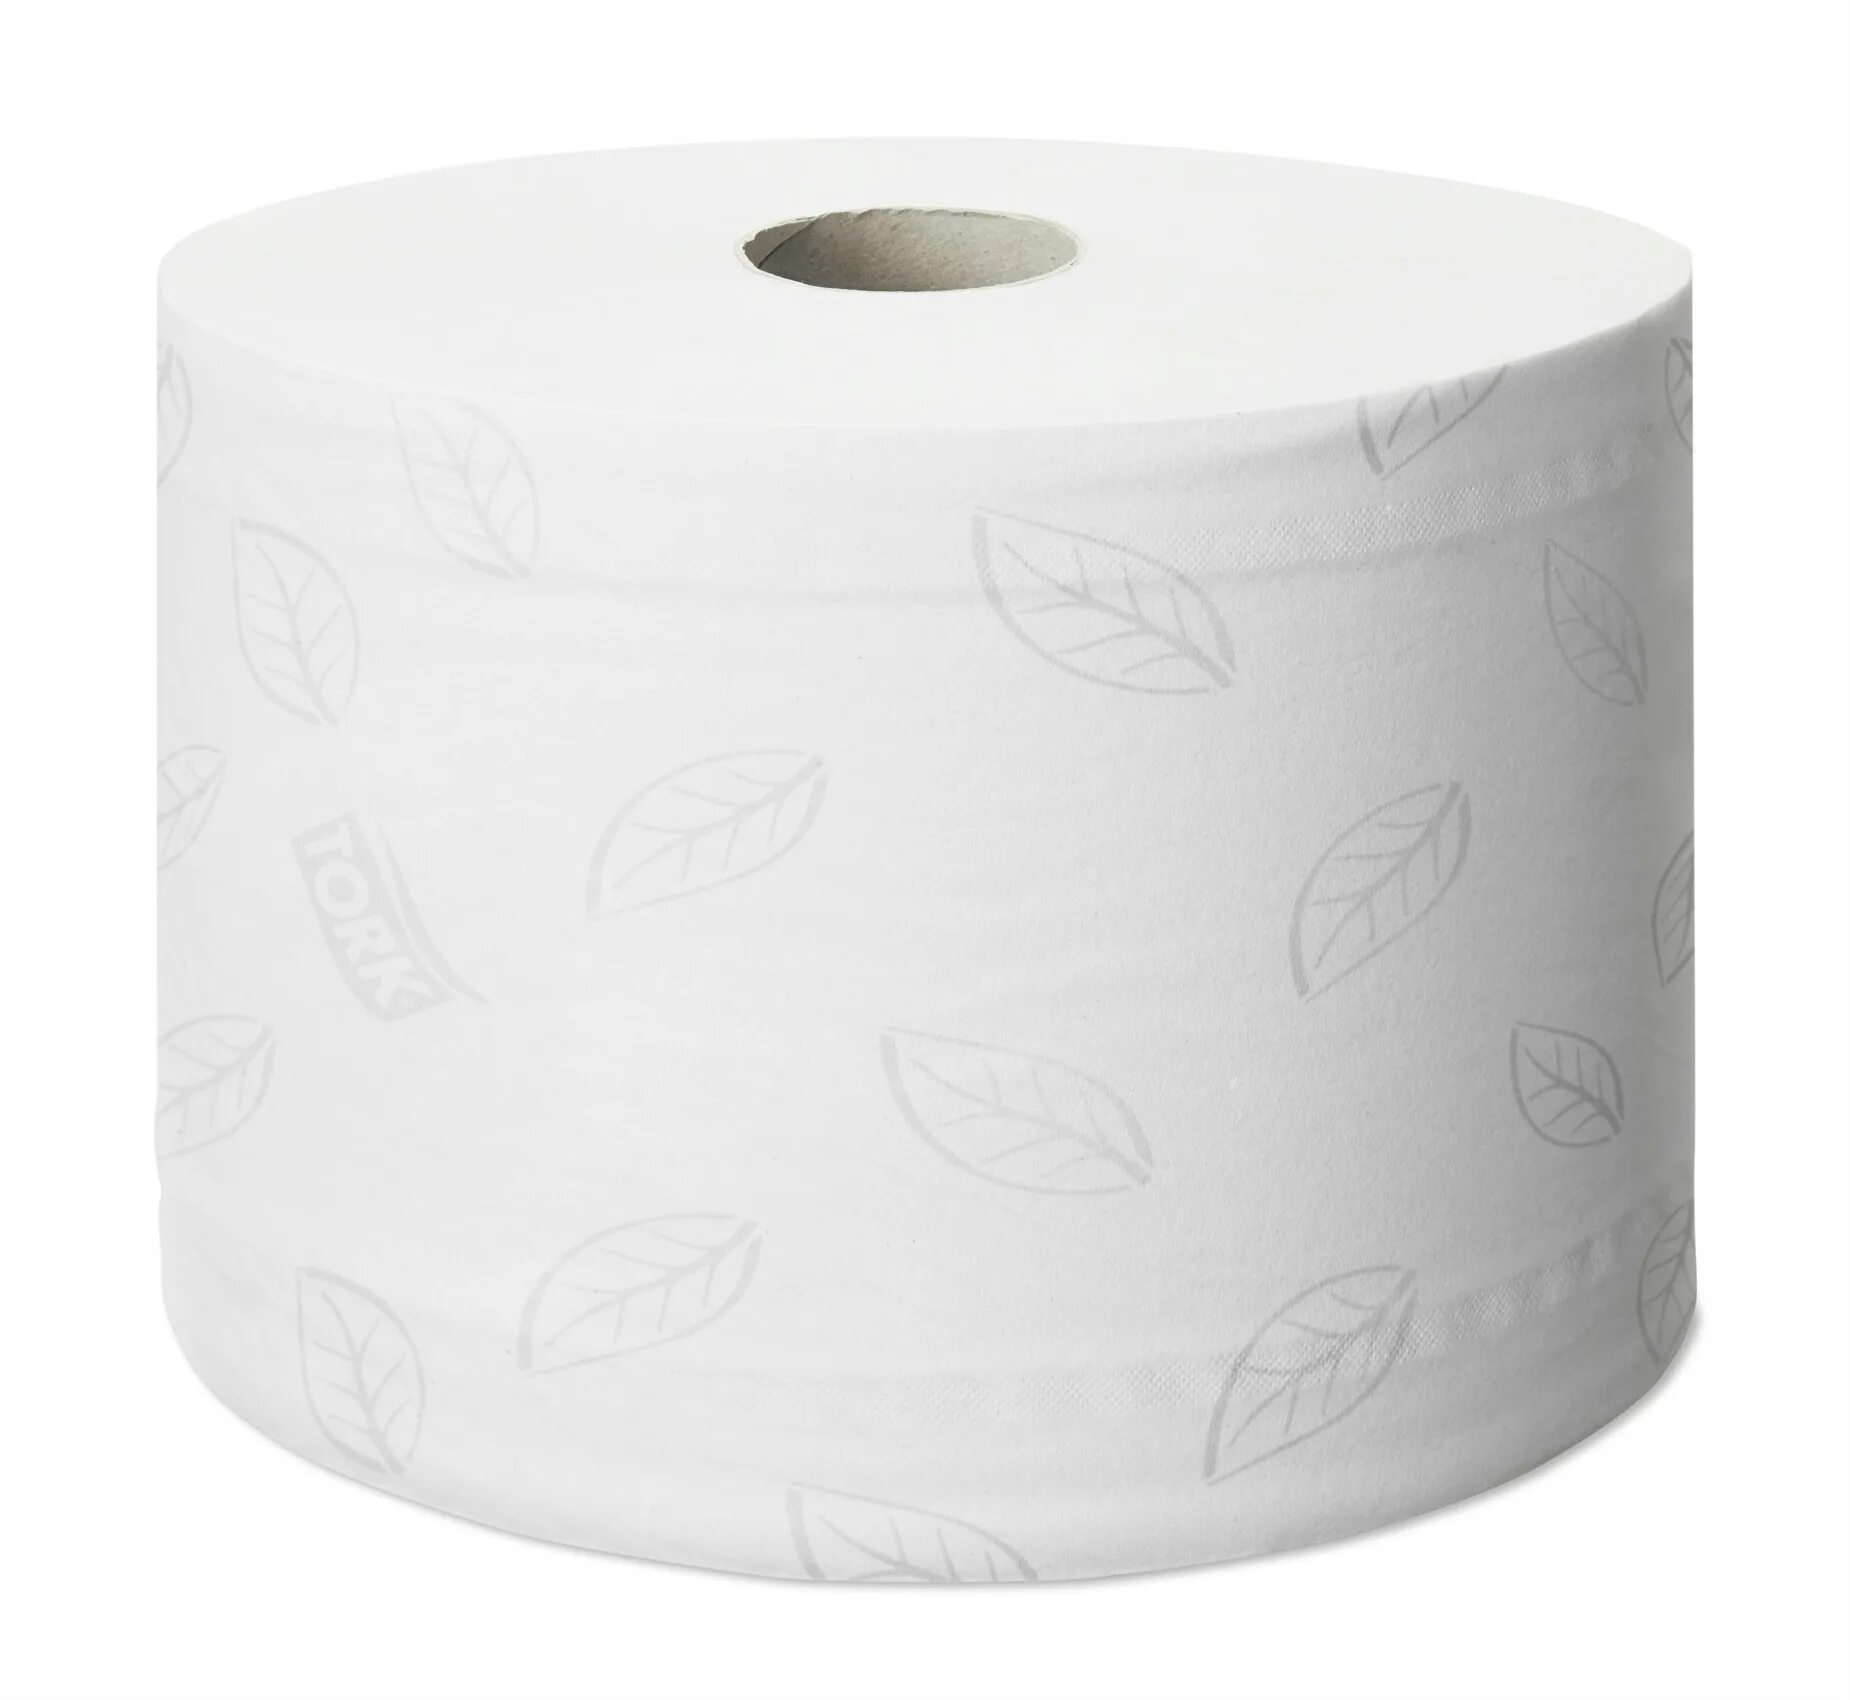 Черные бумажные полотенца. Туалетная бумага Tork SMARTONE. Торк туалетная бумага SMARTONE В мини рулонах 2сл, 112м, 620л (12шт/кор). Торк бумага туалетная т8 Advanced (SMARTONE) 2сл 207м/13,4 белая. Tork 472242.